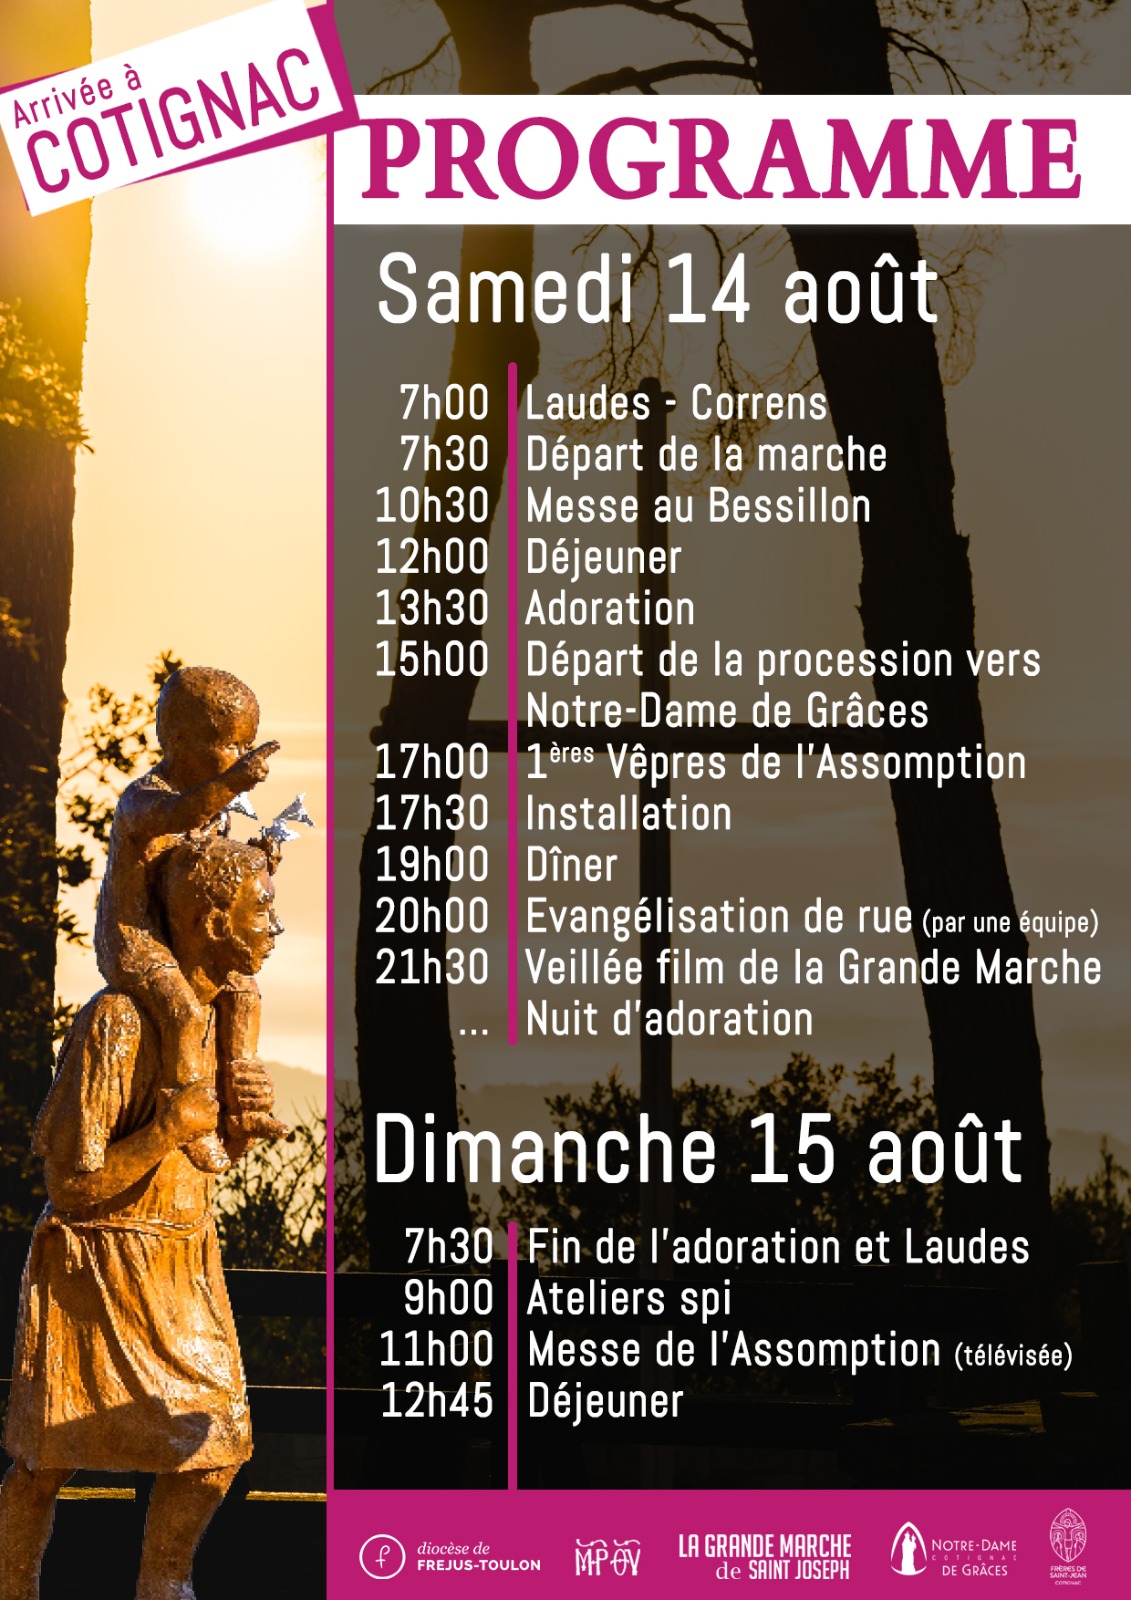 La « Grande marche de saint Joseph » traversera la France cet été PHOTO-2021-07-25-23-08-33